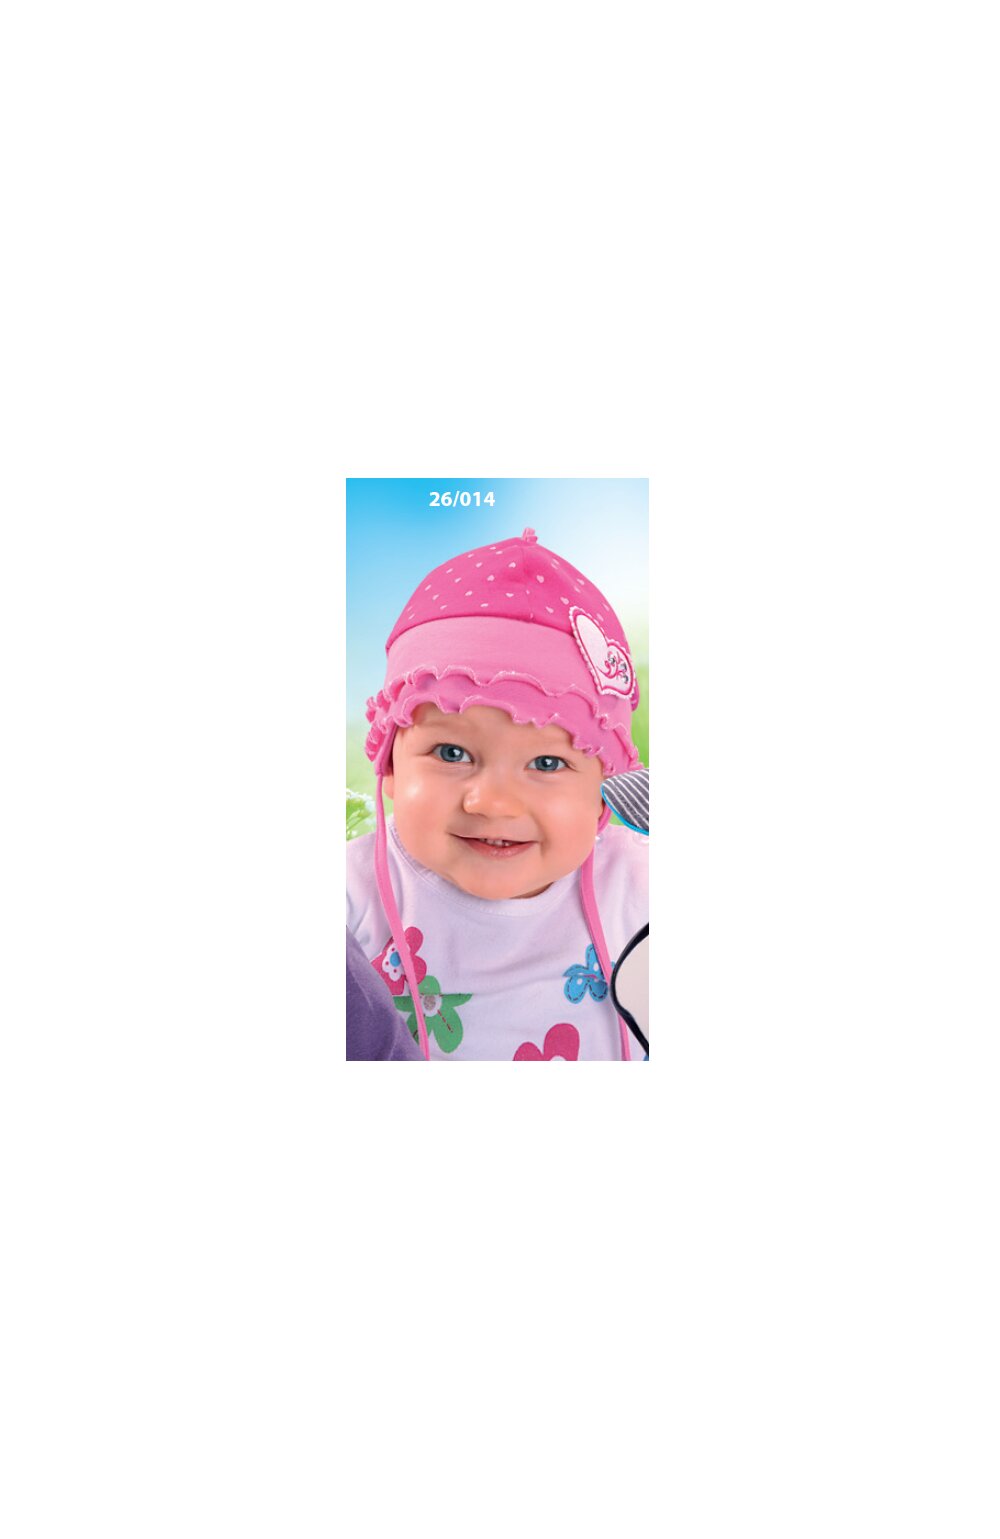 Caciula din bumbac pentru bebelusi 1-12 luni - AJS 26-014 lila